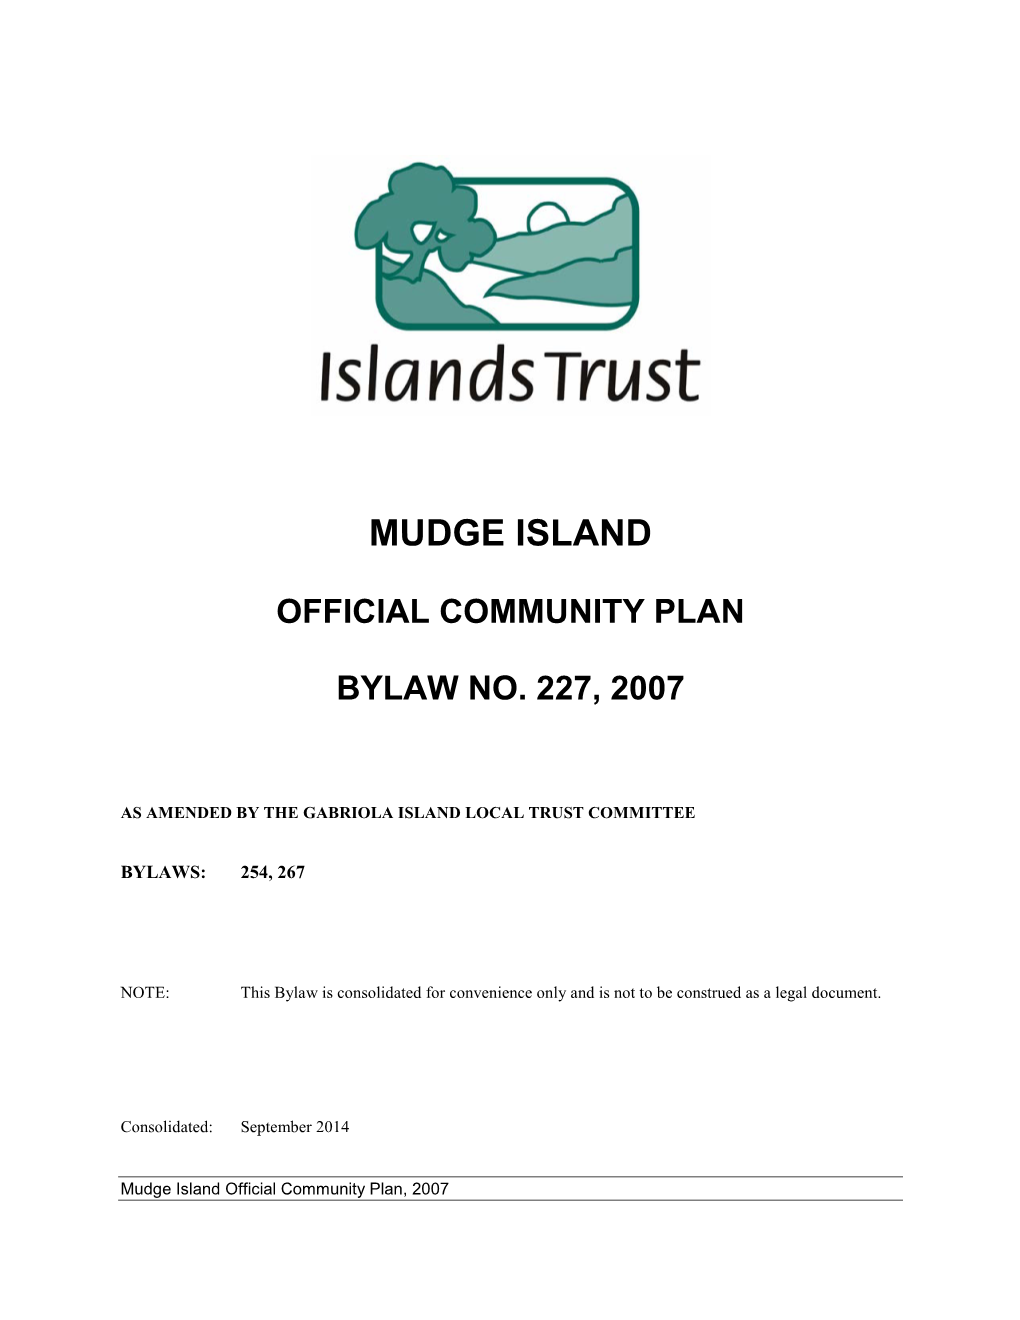 Mudge Island